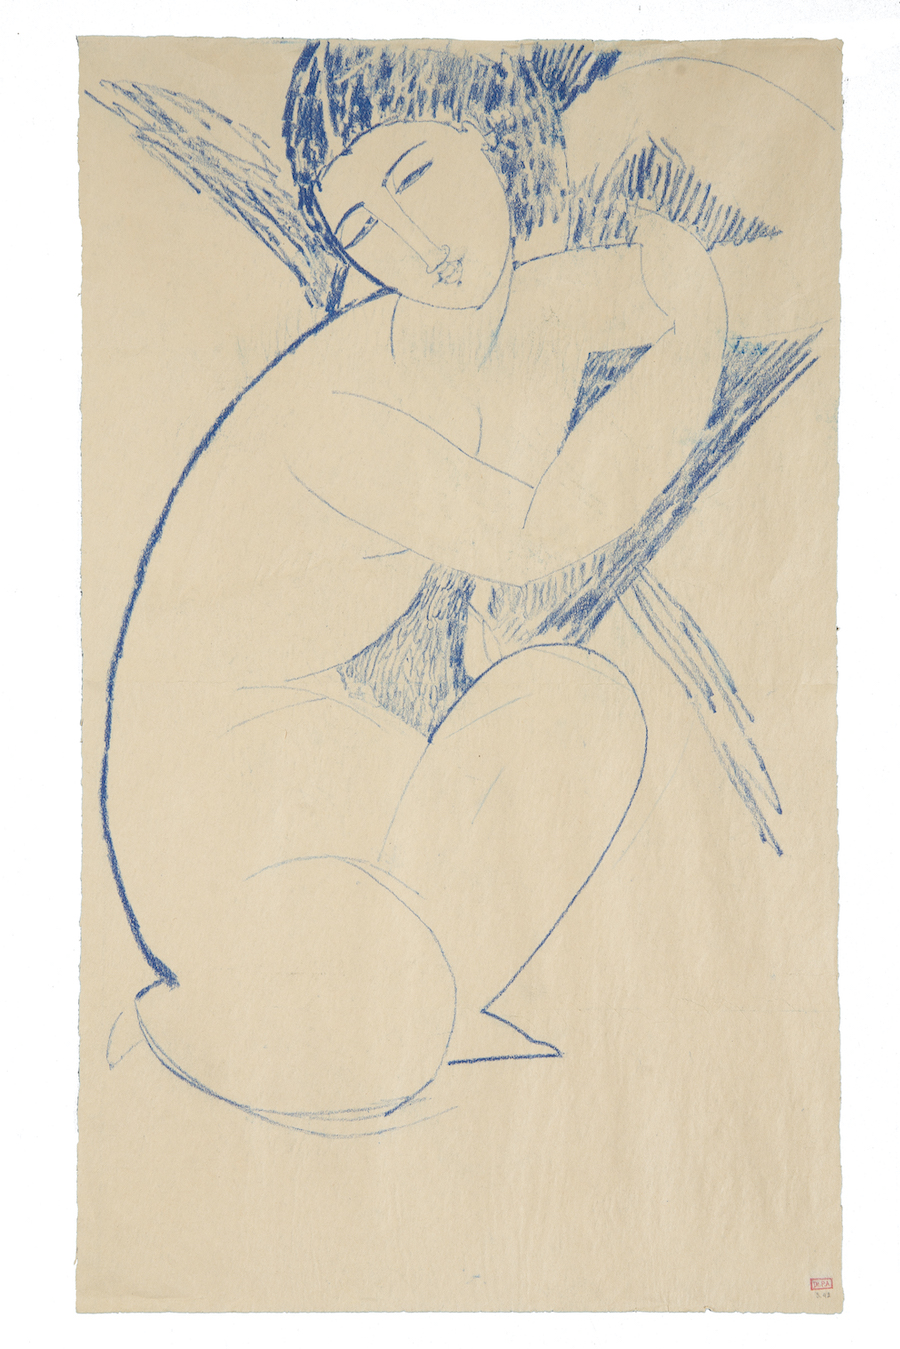 Amedeo MODIGLIANI (1884-1920), Nu accroupi, 1909, Crayon de couleur bleu sur papier